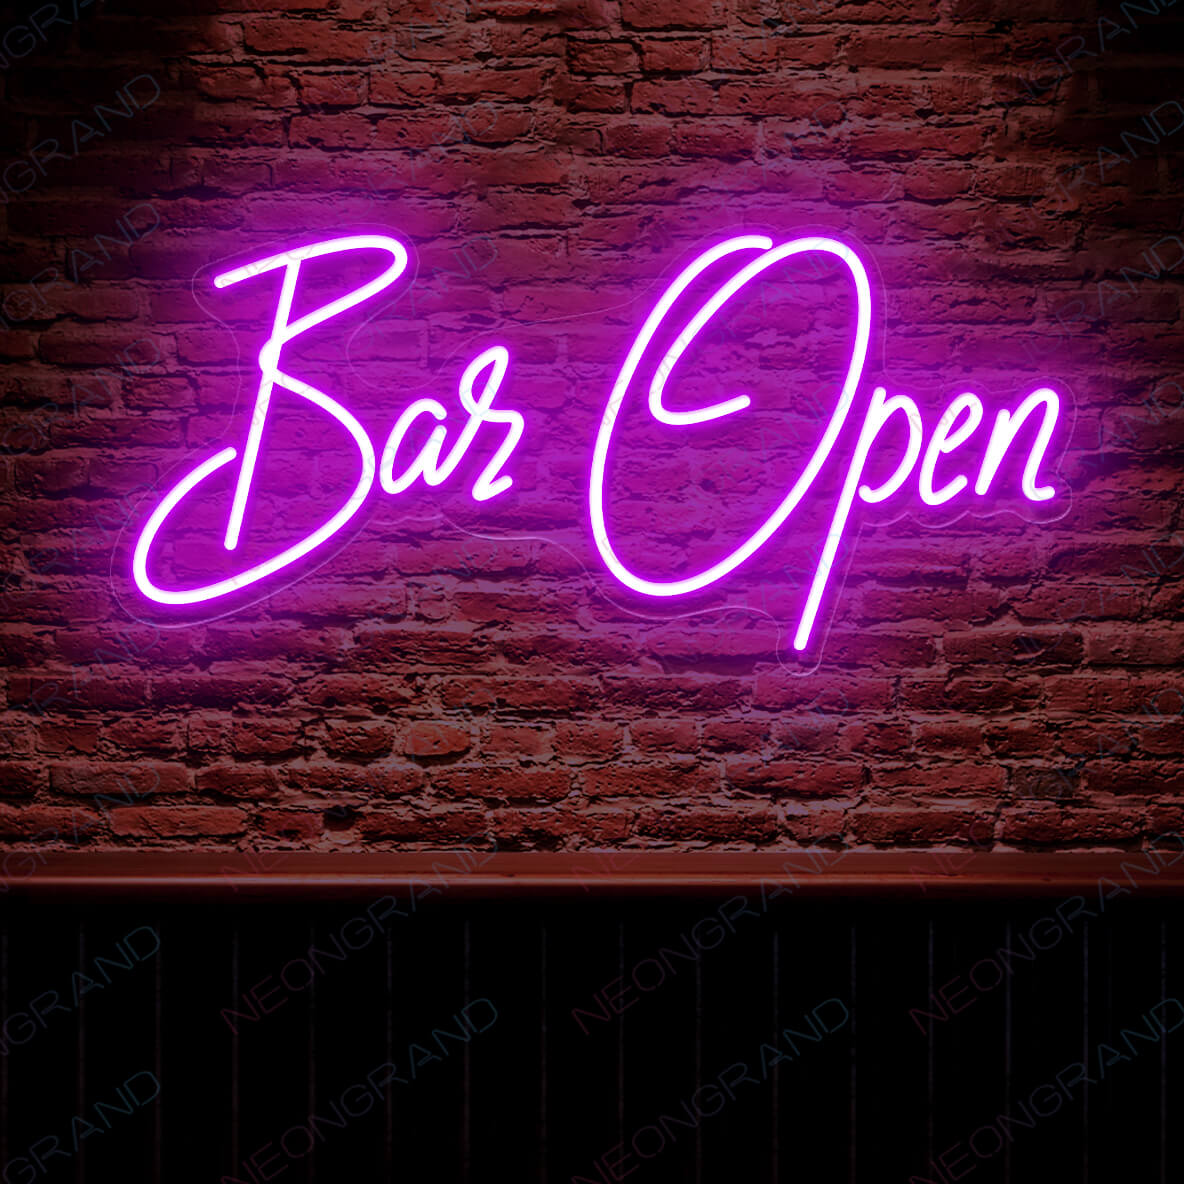 Open Sign Neon Aesthetic Led Light Bar Open purple